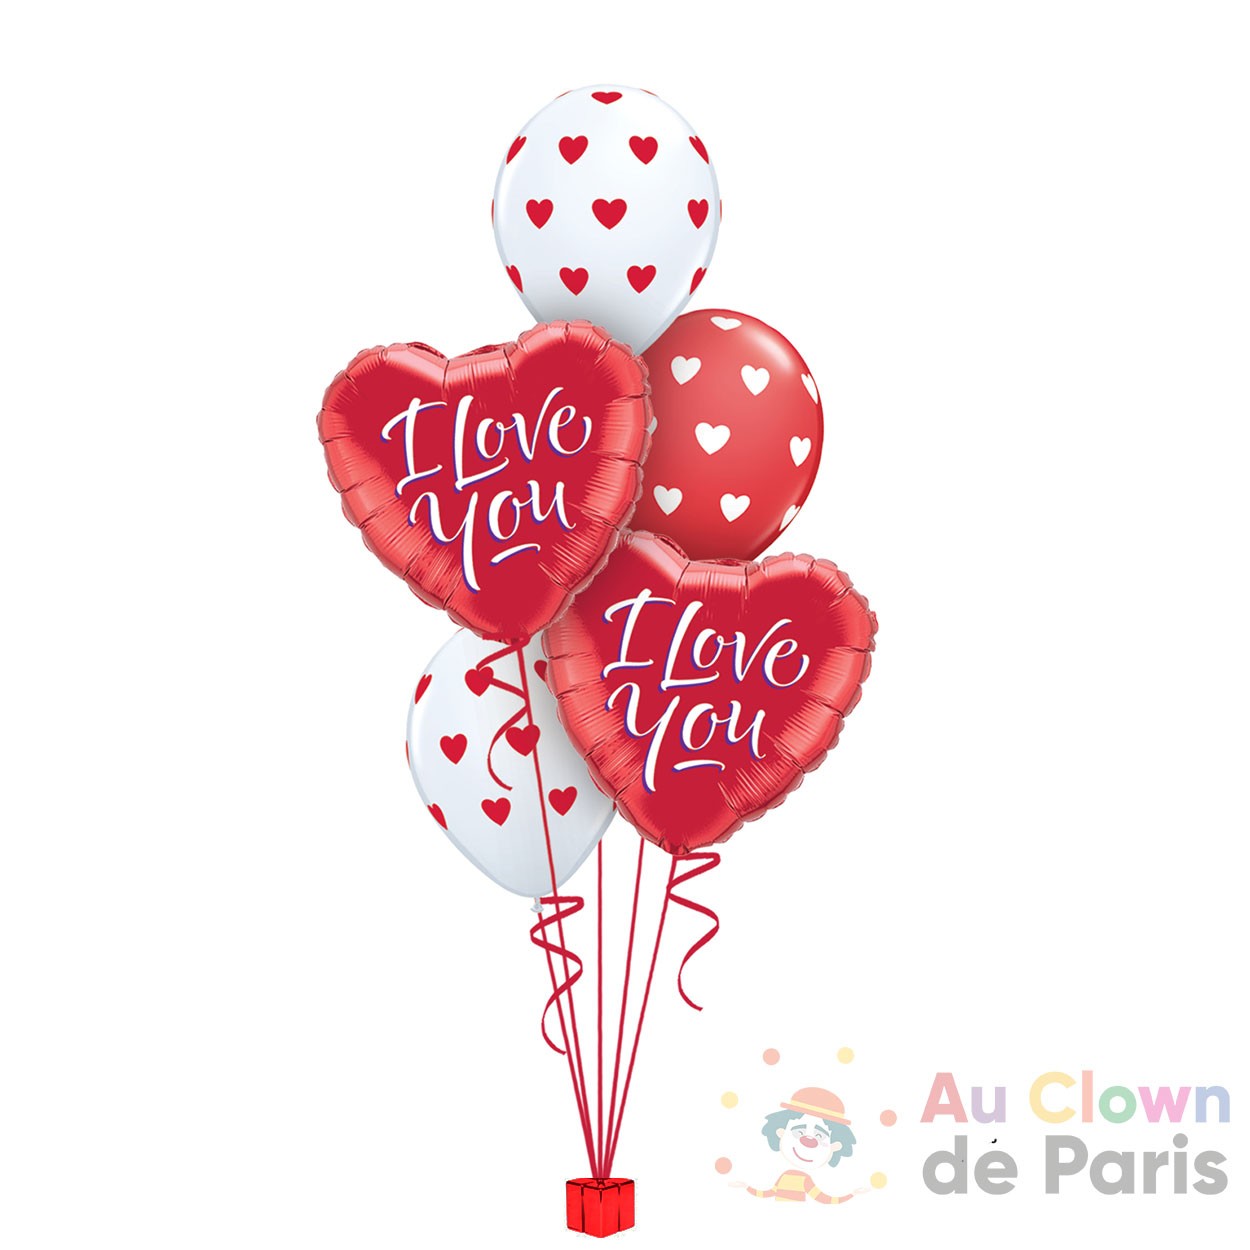 https://au-clown-de-paris.fr/wp-content/uploads/2021/01/bouquet-ballons-coeur-i-love-you.jpg